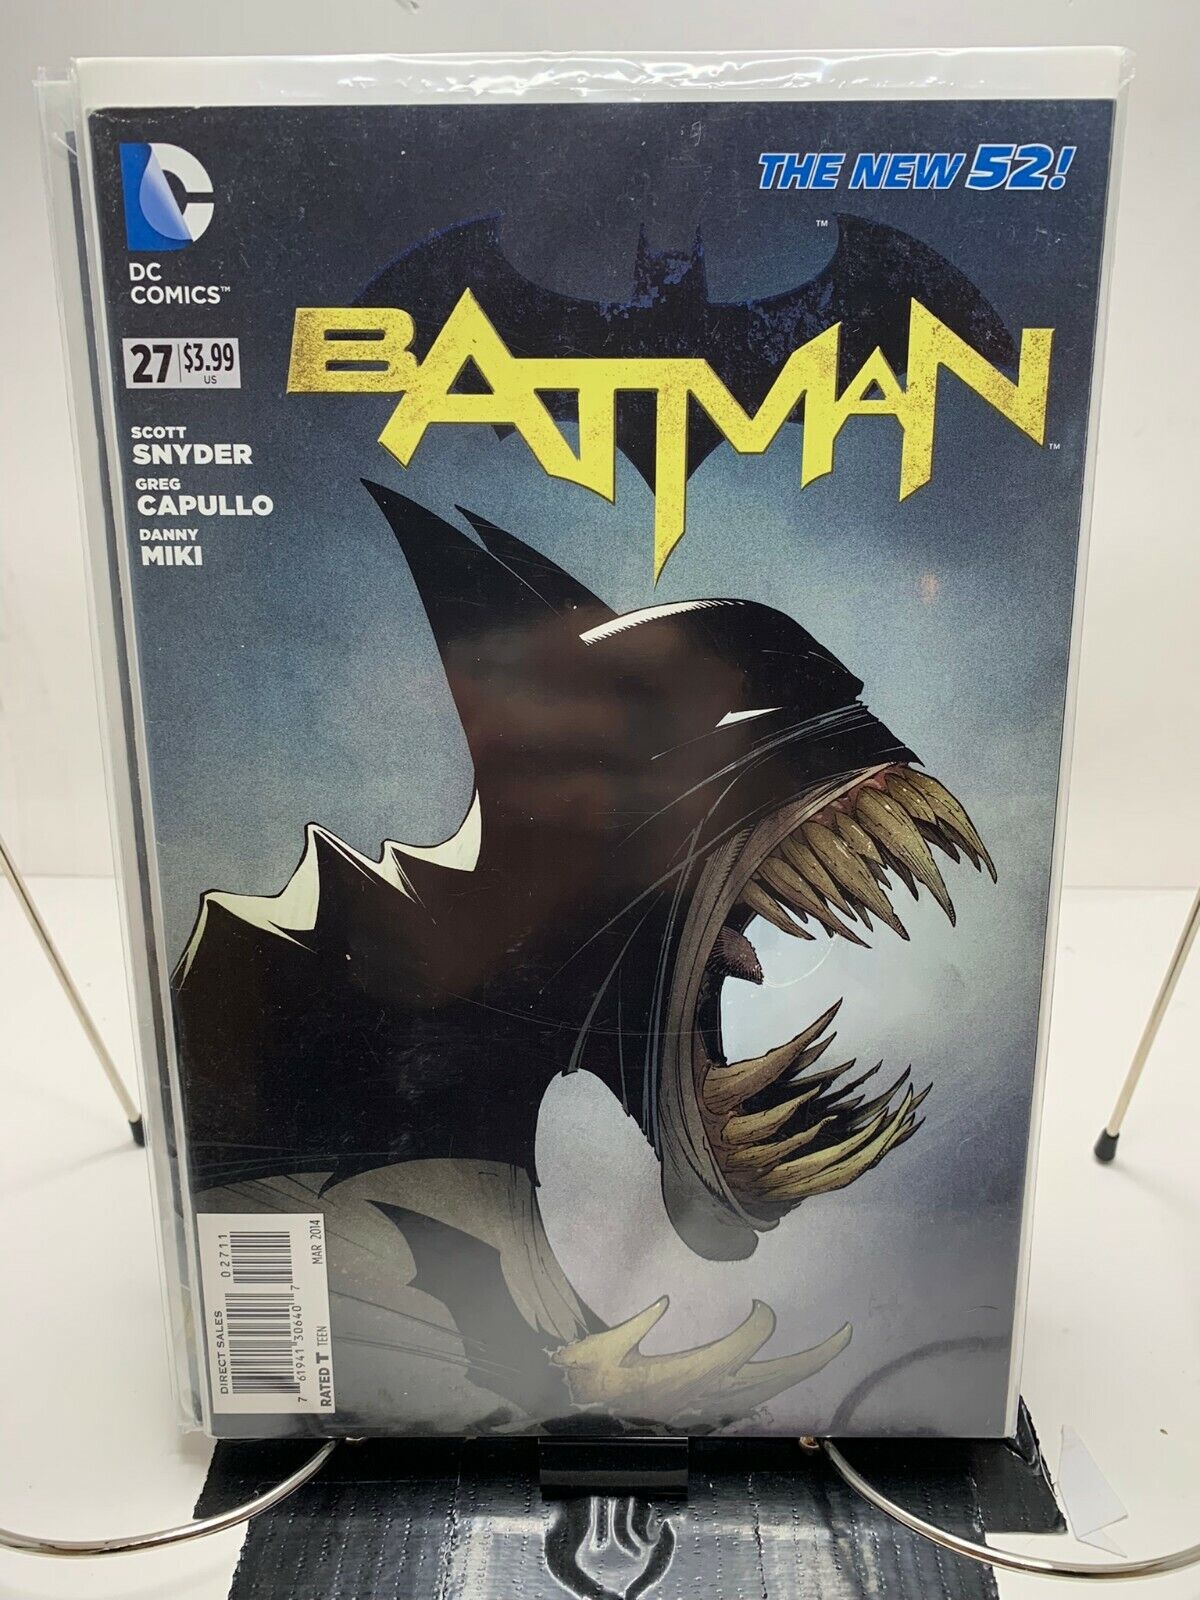 BATMAN THE NEW 52 #27 NEAR MINT 2014 (2011 SERIES) DC COMICS FAST SHIPPING